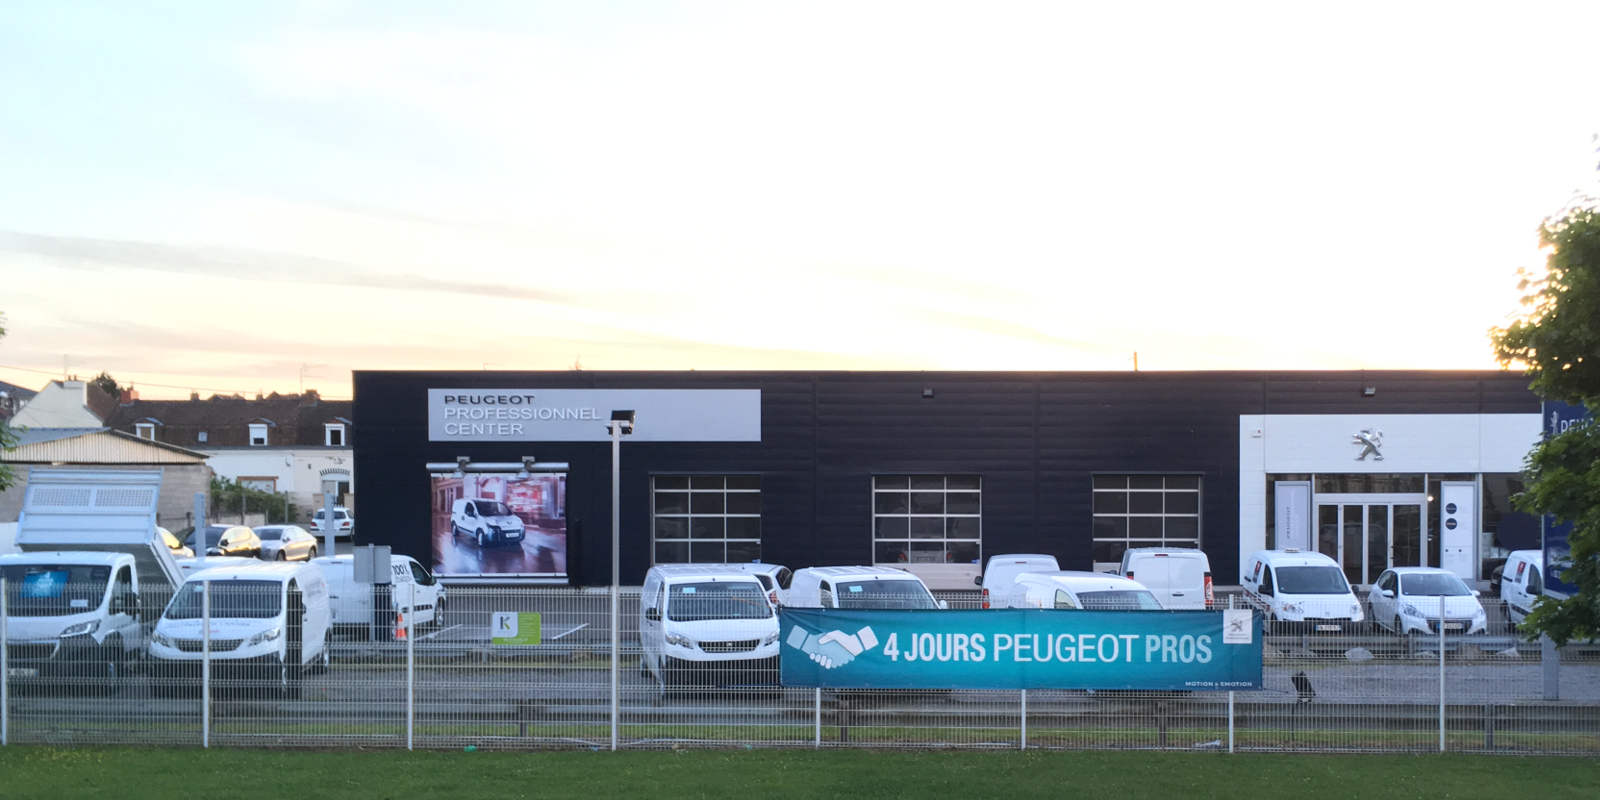 Peugeot Professionnel Center (03 21 73 49 58 / 03 21 73 49 84)